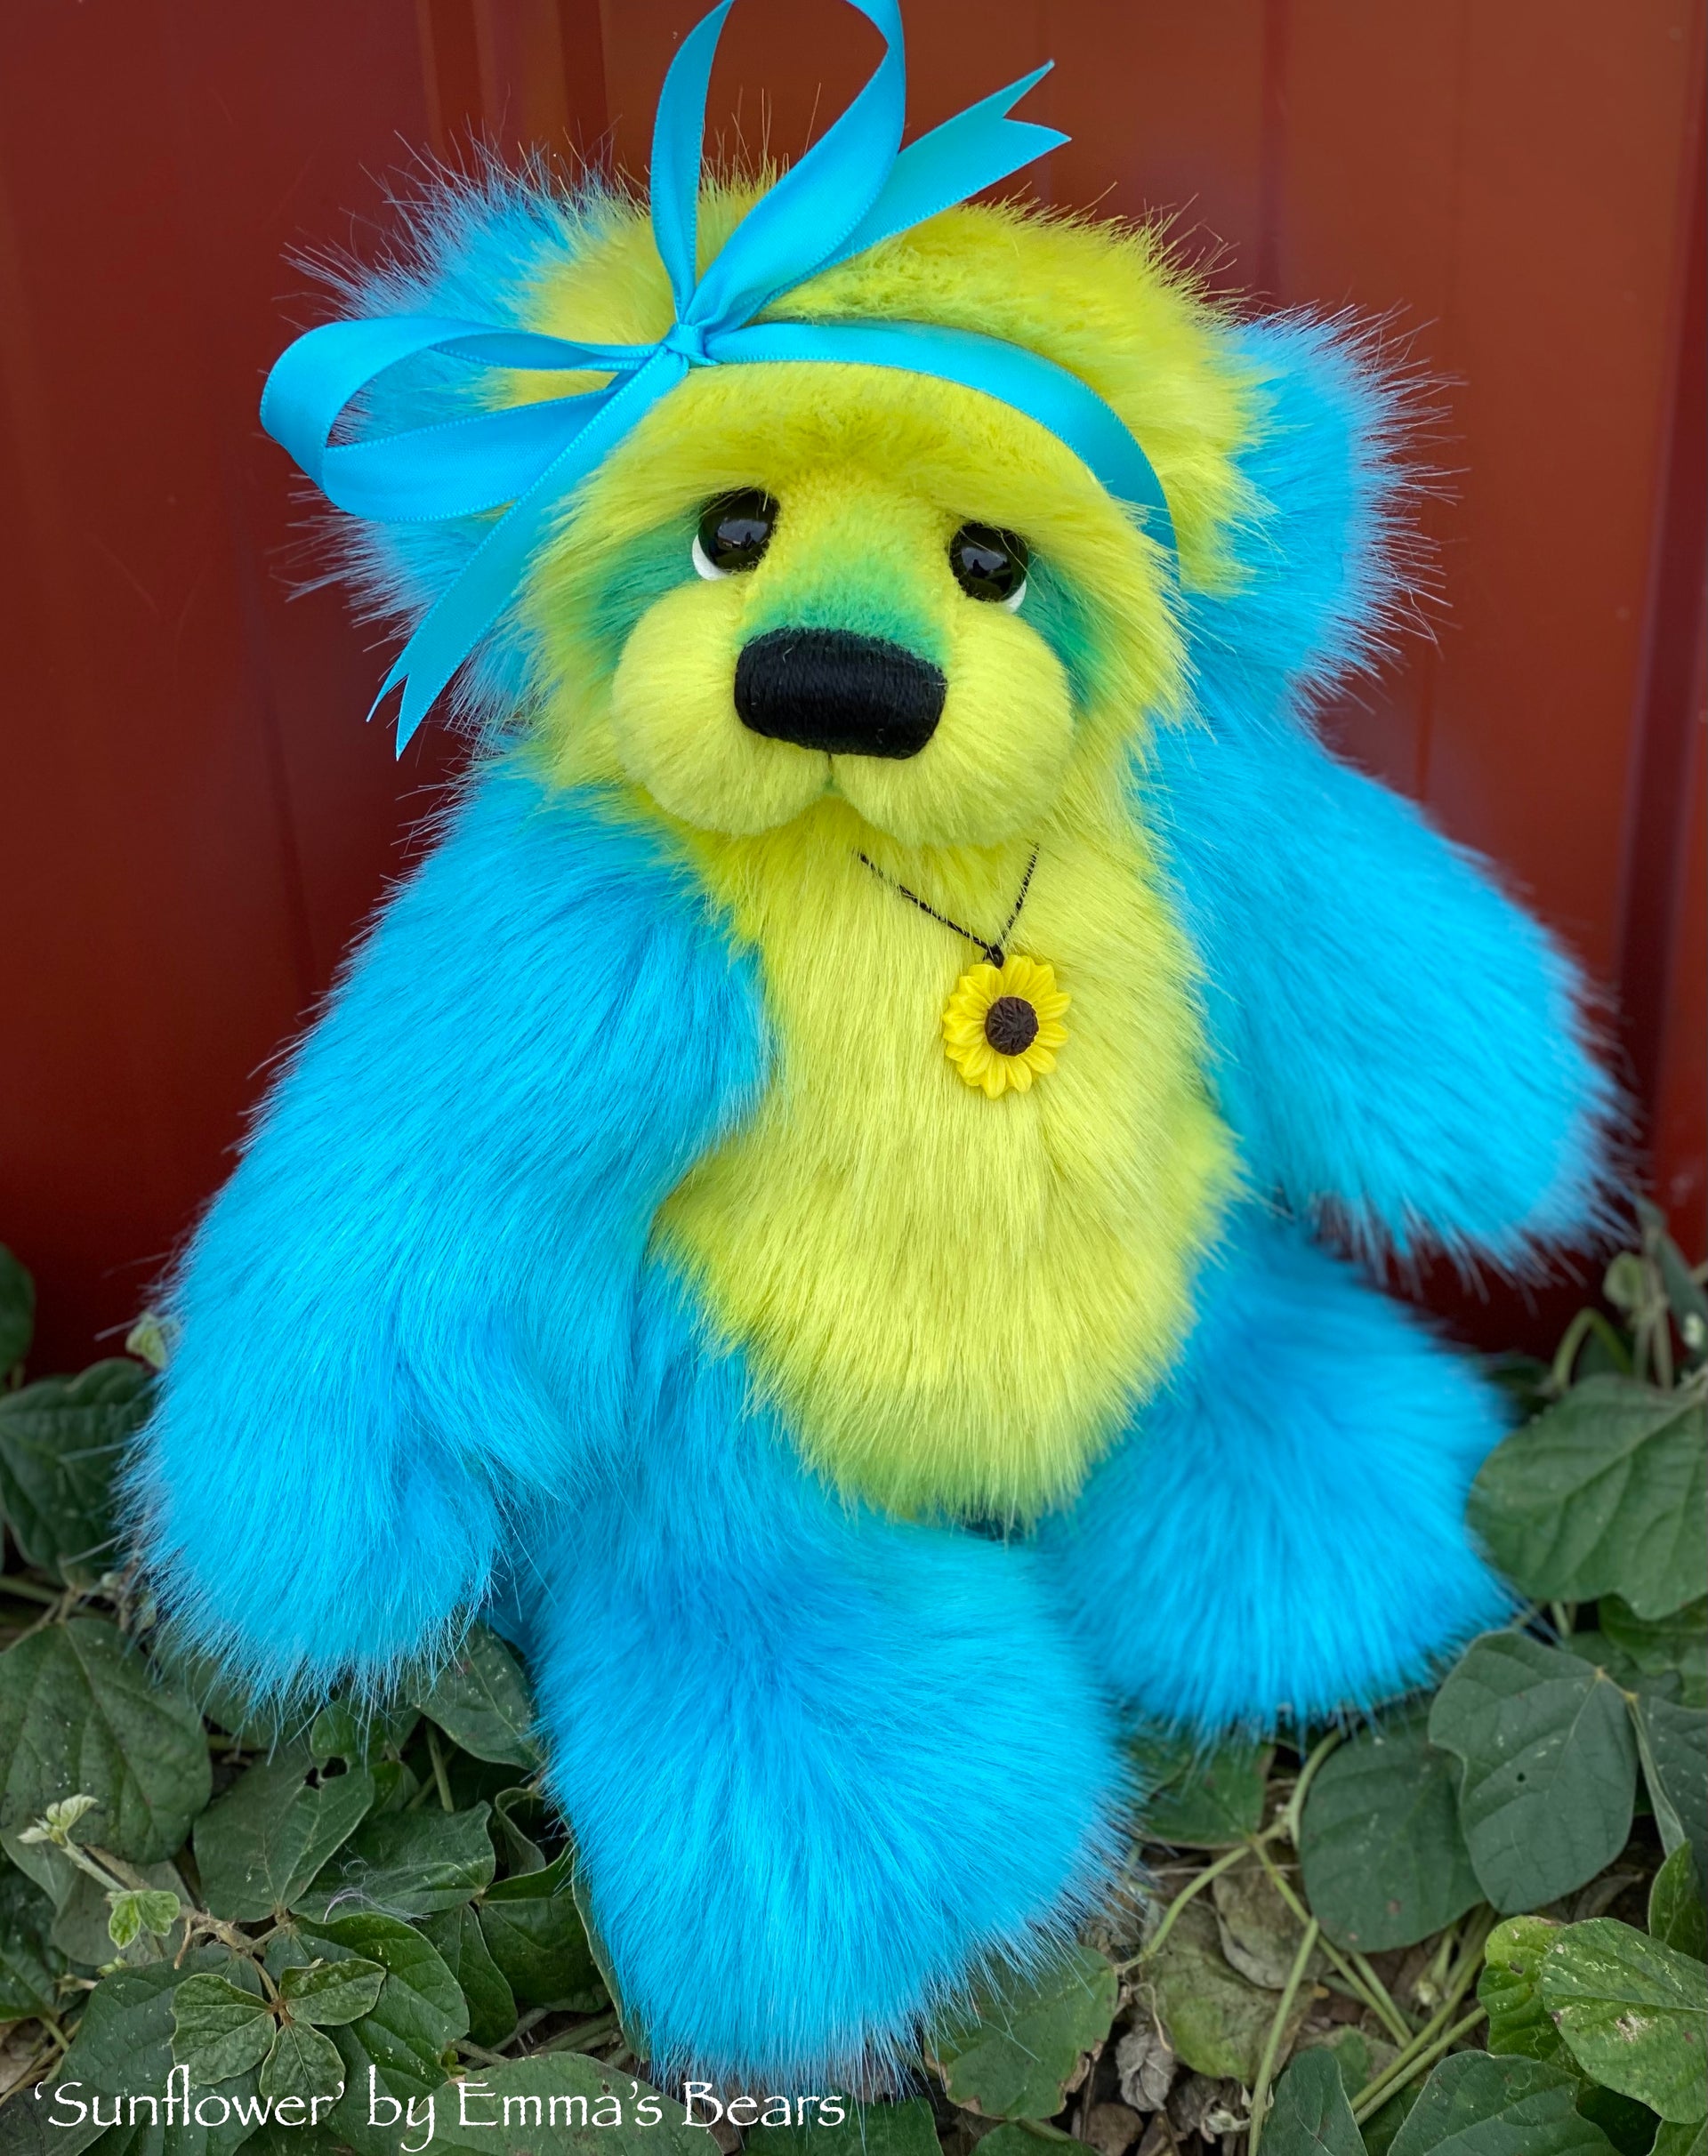 Sunflower - 12" faux fur artist bear by Emmas Bears - OOAK